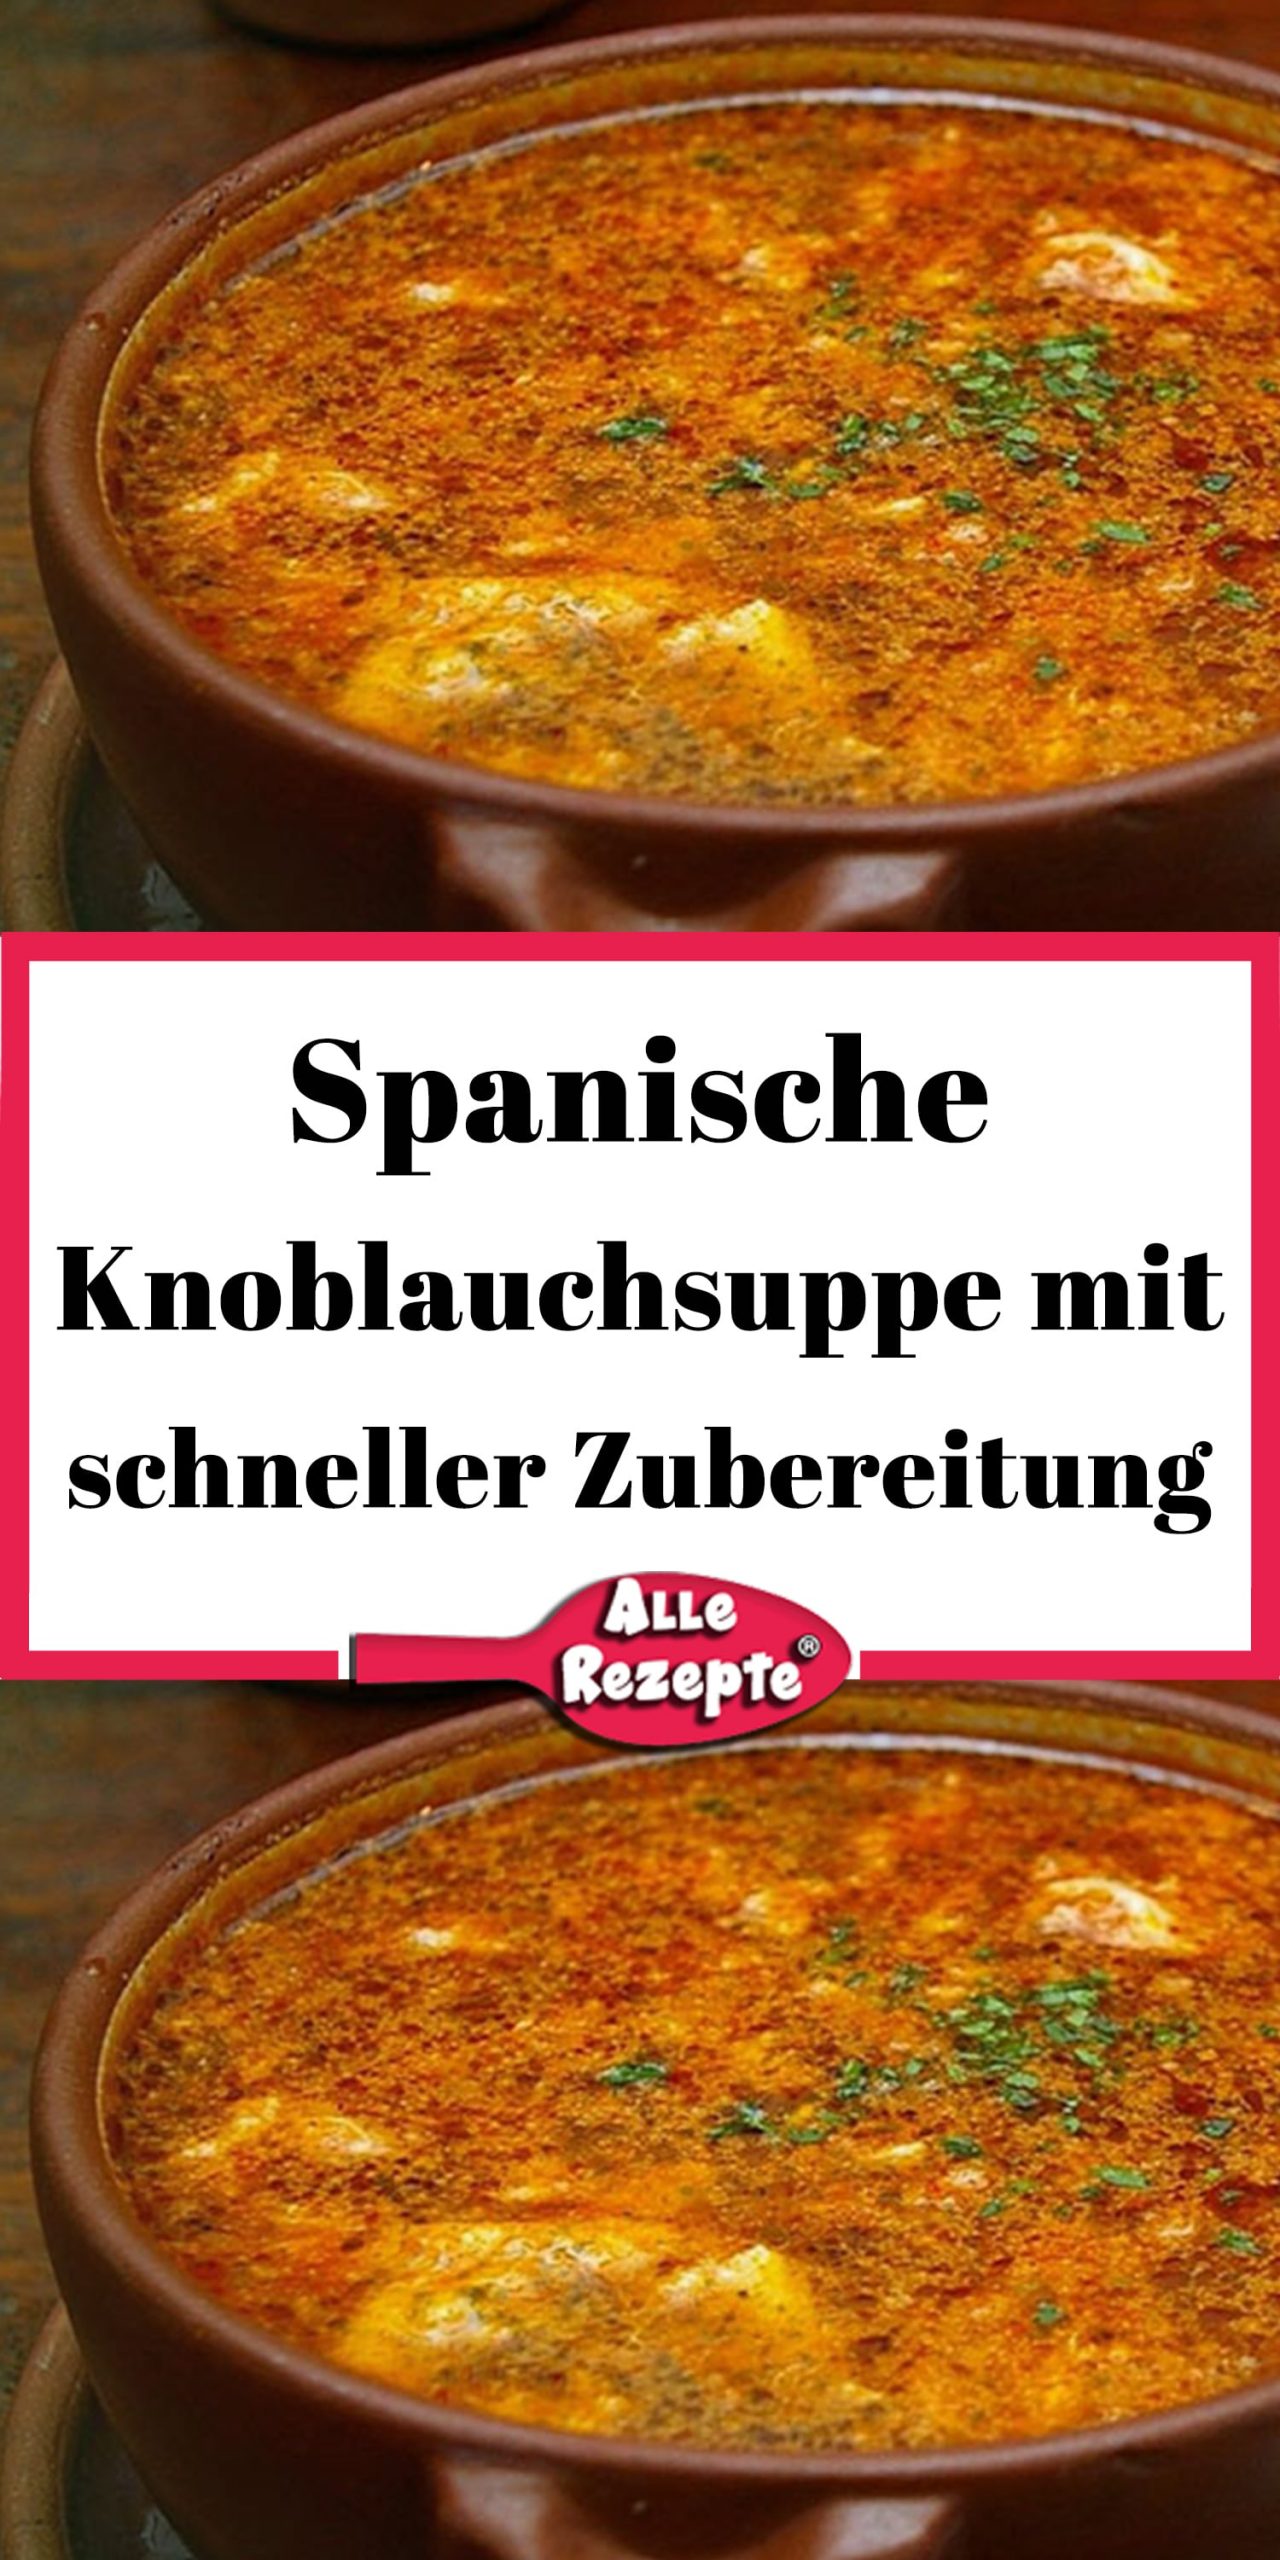 Spanische Knoblauchsuppe mit schneller Zubereitung - Alle Rezepte